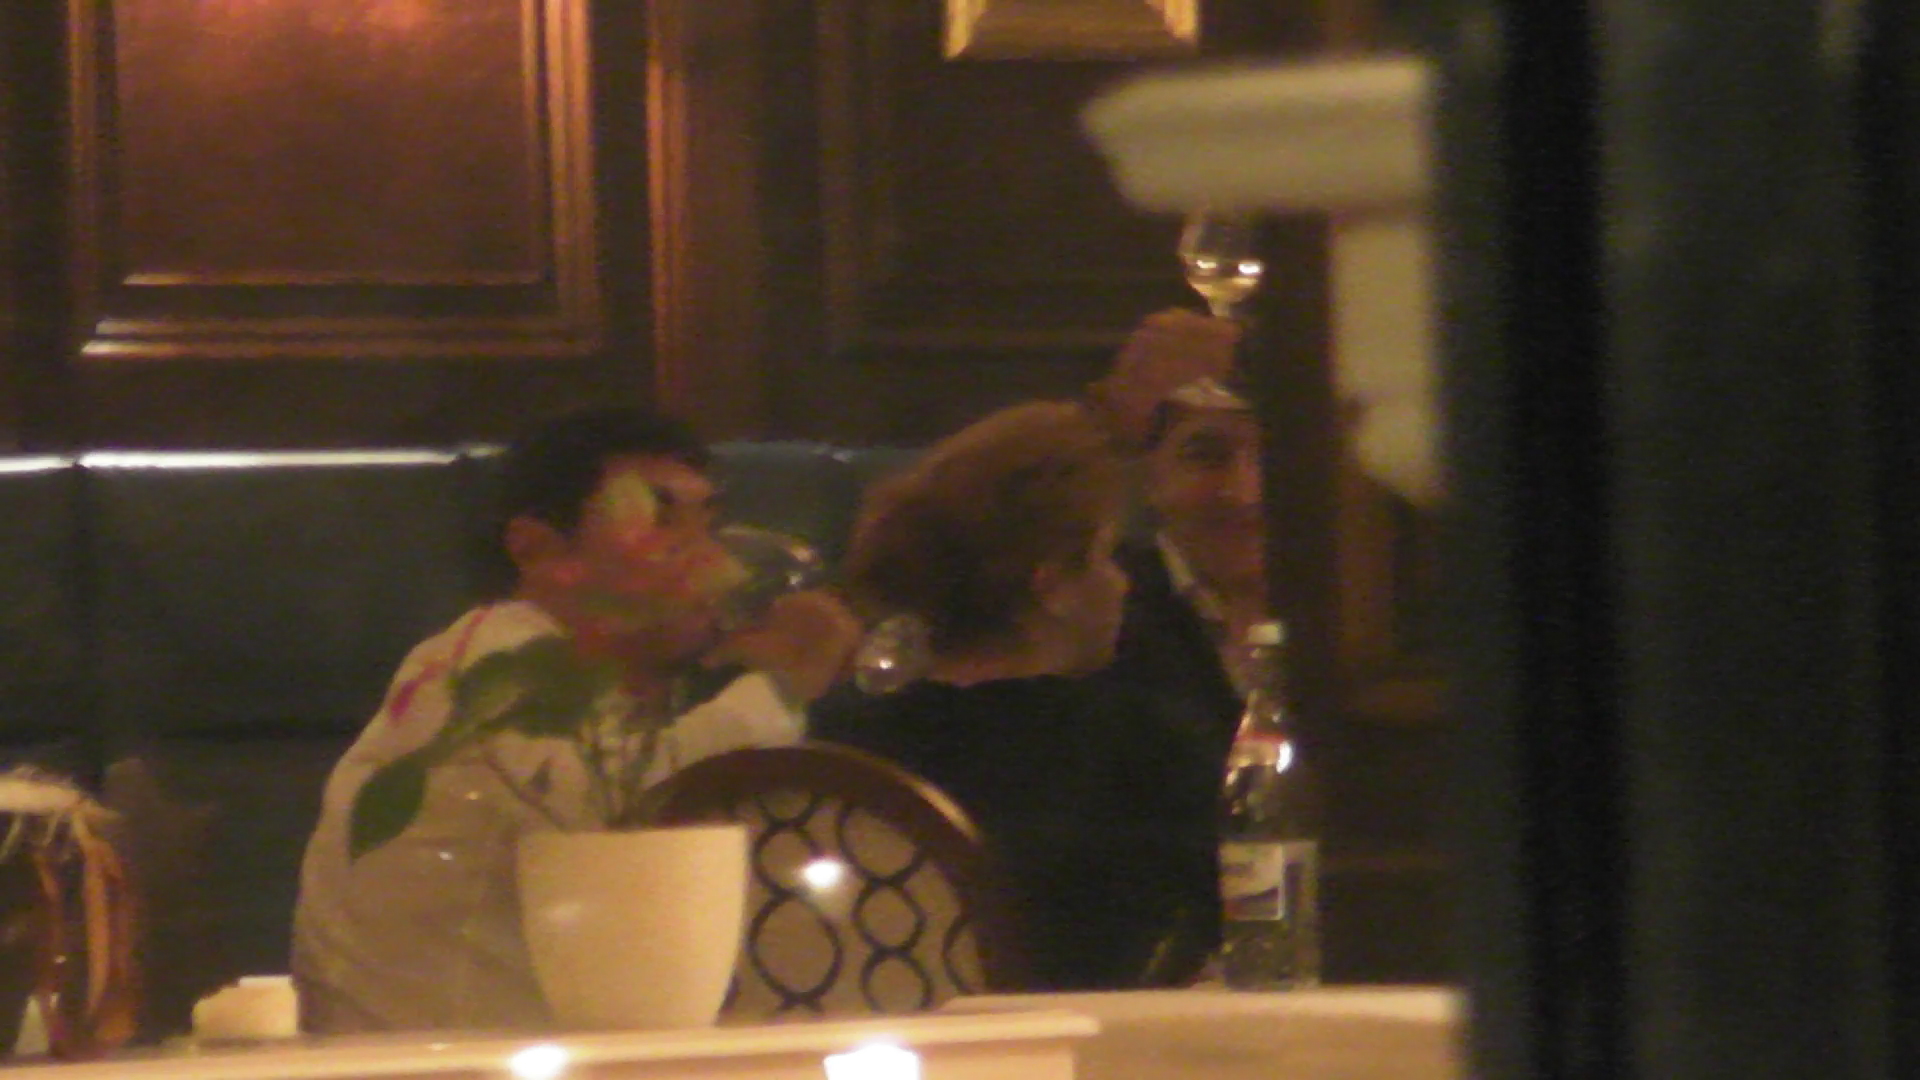 Patronul restaurantului, in compania caruia Mihaela si Cristi au luat cina, a tinut un mic toast